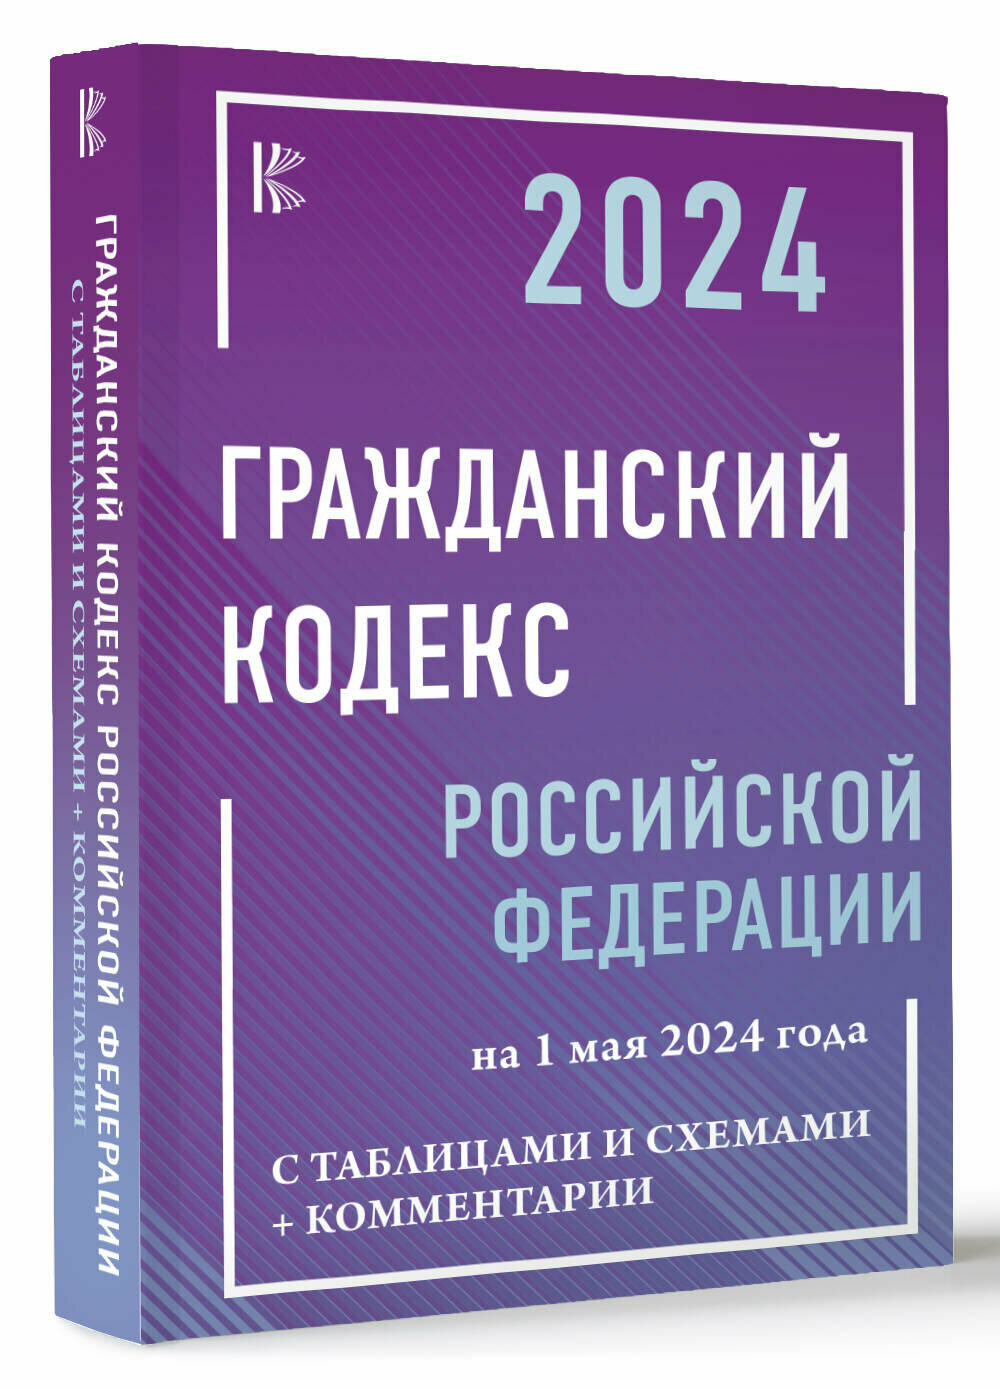 Гражданский кодекс Российской Федерации на 1 мая 2024 года с таблицами и схемами + комментарии .